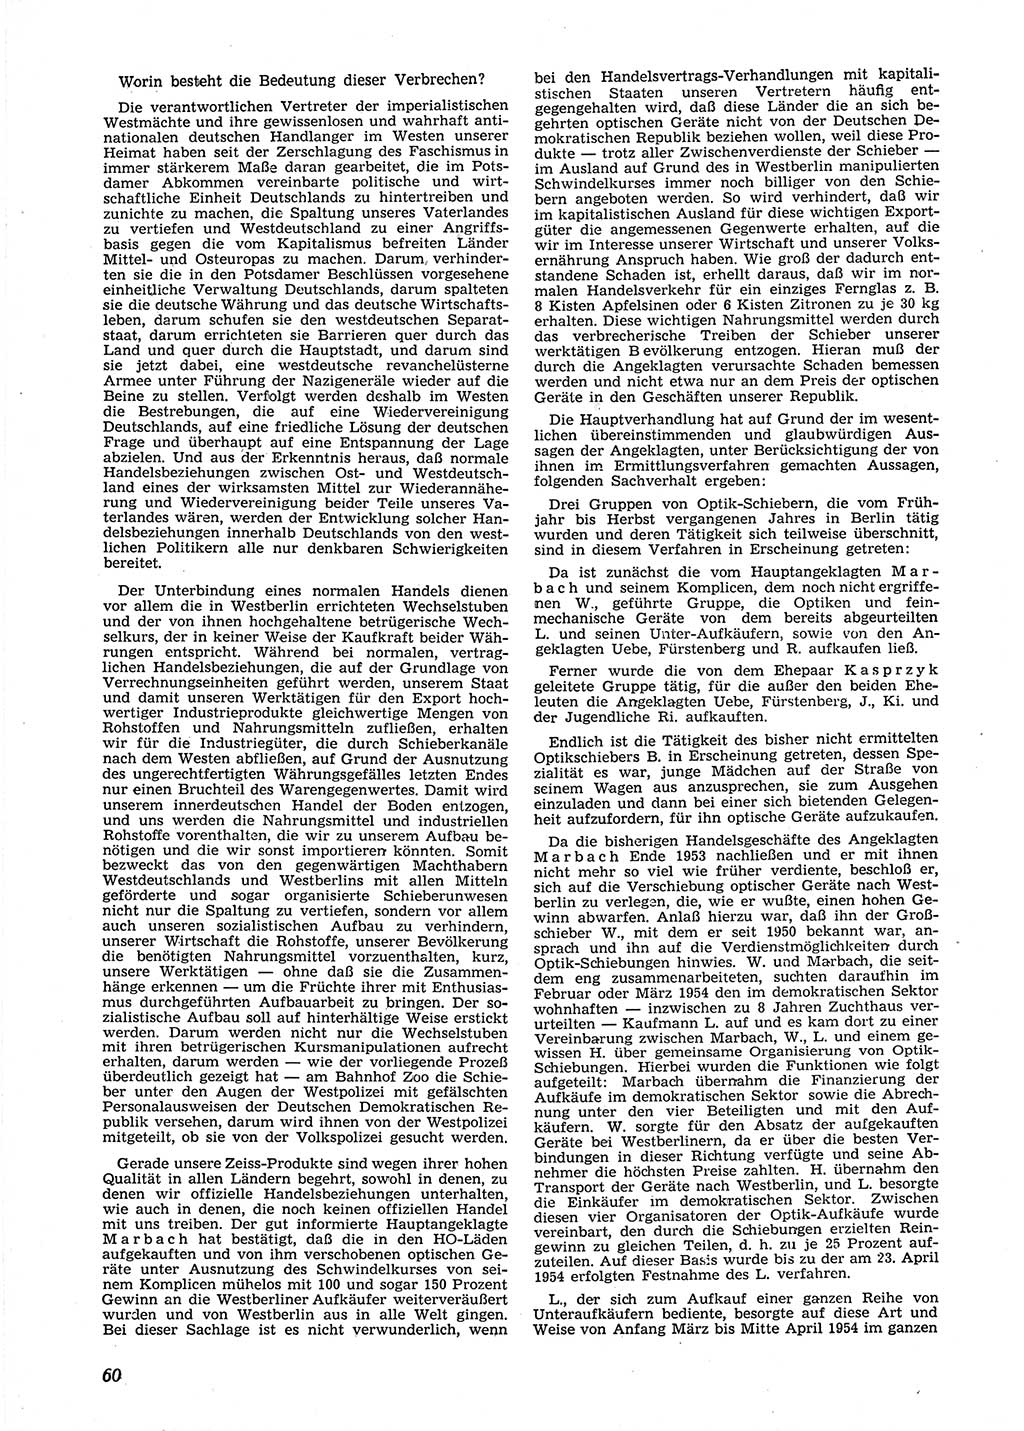 Neue Justiz (NJ), Zeitschrift für Recht und Rechtswissenschaft [Deutsche Demokratische Republik (DDR)], 9. Jahrgang 1955, Seite 60 (NJ DDR 1955, S. 60)